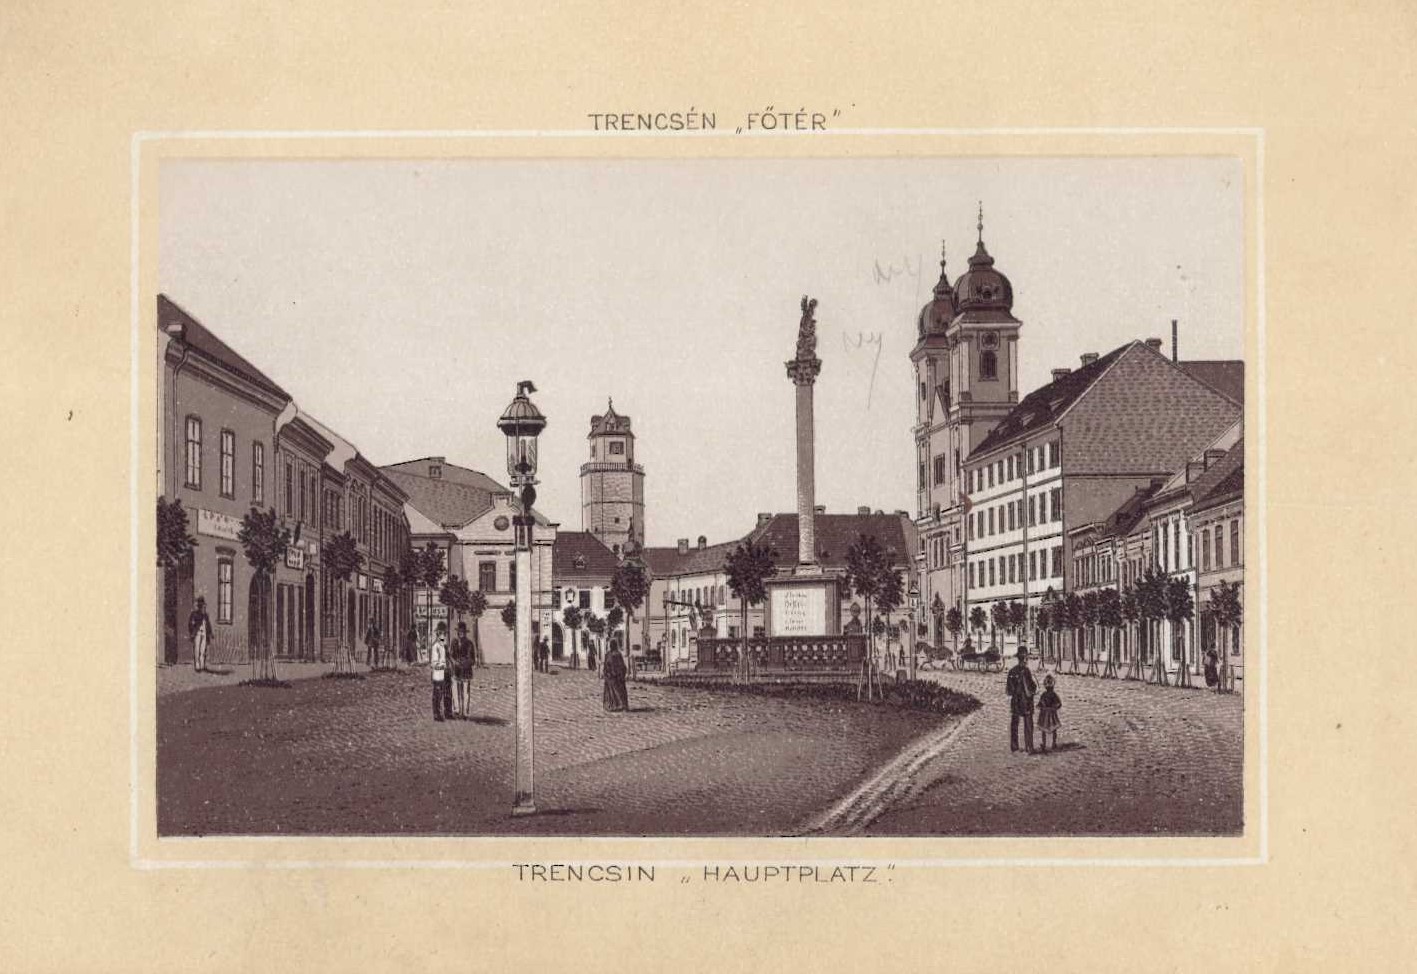 Trencsén "Fotér" / Trencsin "hauptplatz"